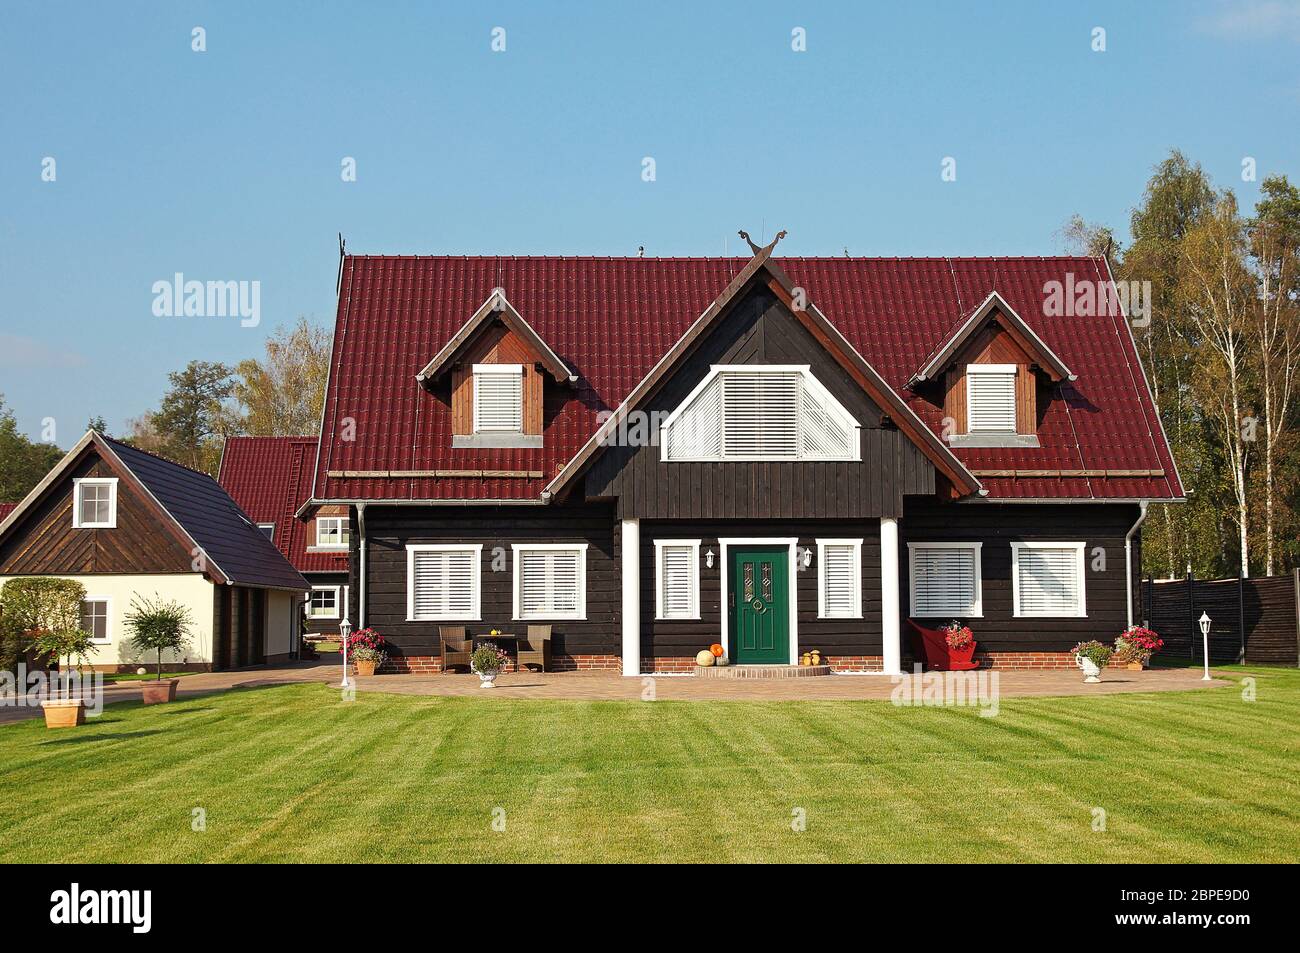 Einfamilienhaus / Single Family House Stock Photo